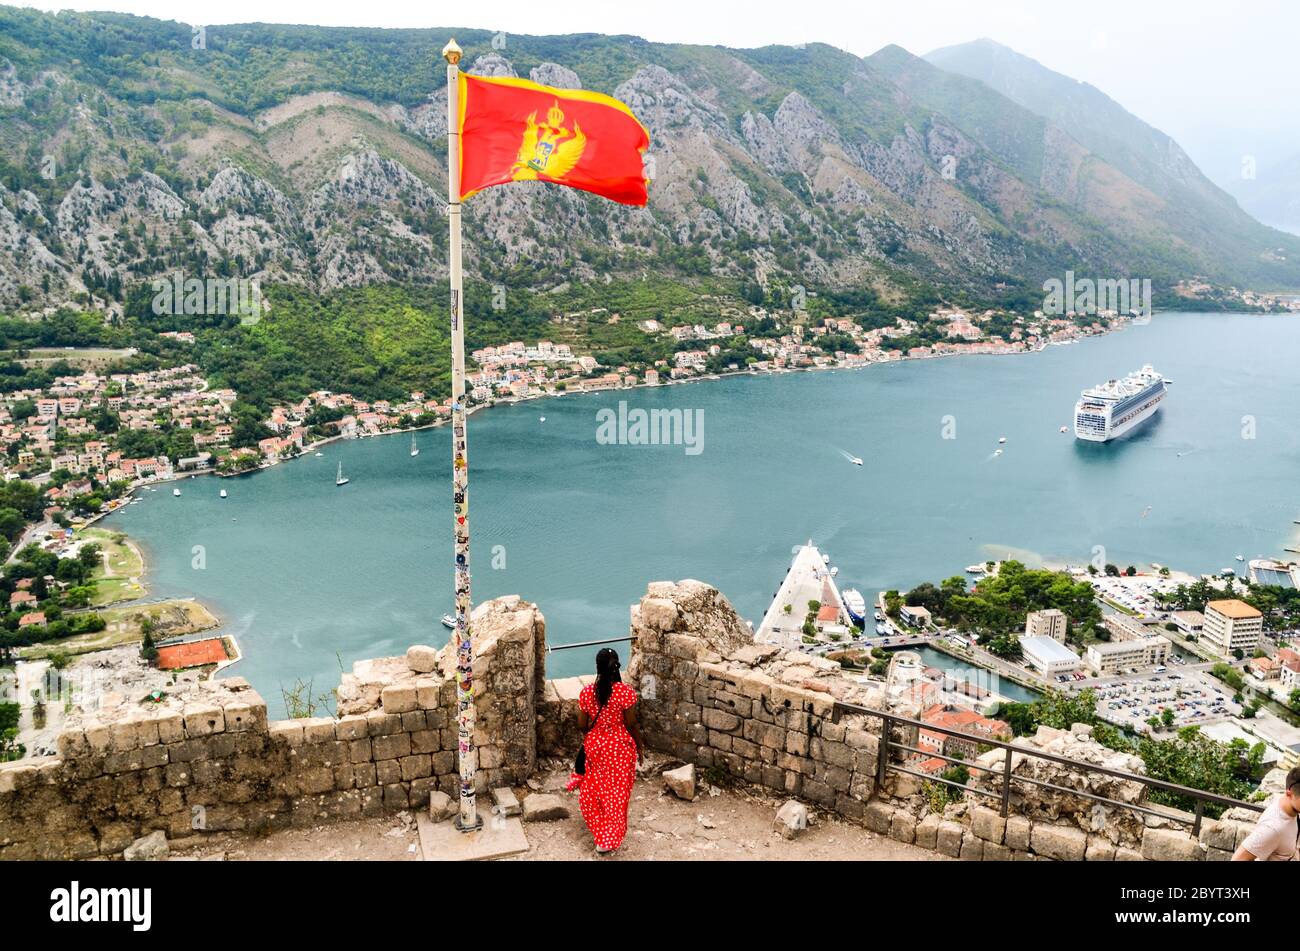 Frau in einem roten Kleid mit der roten Flagge Montenegros mit Blick auf ein großes Schiff in der Bucht von Kotor, Montenegro Stockfoto